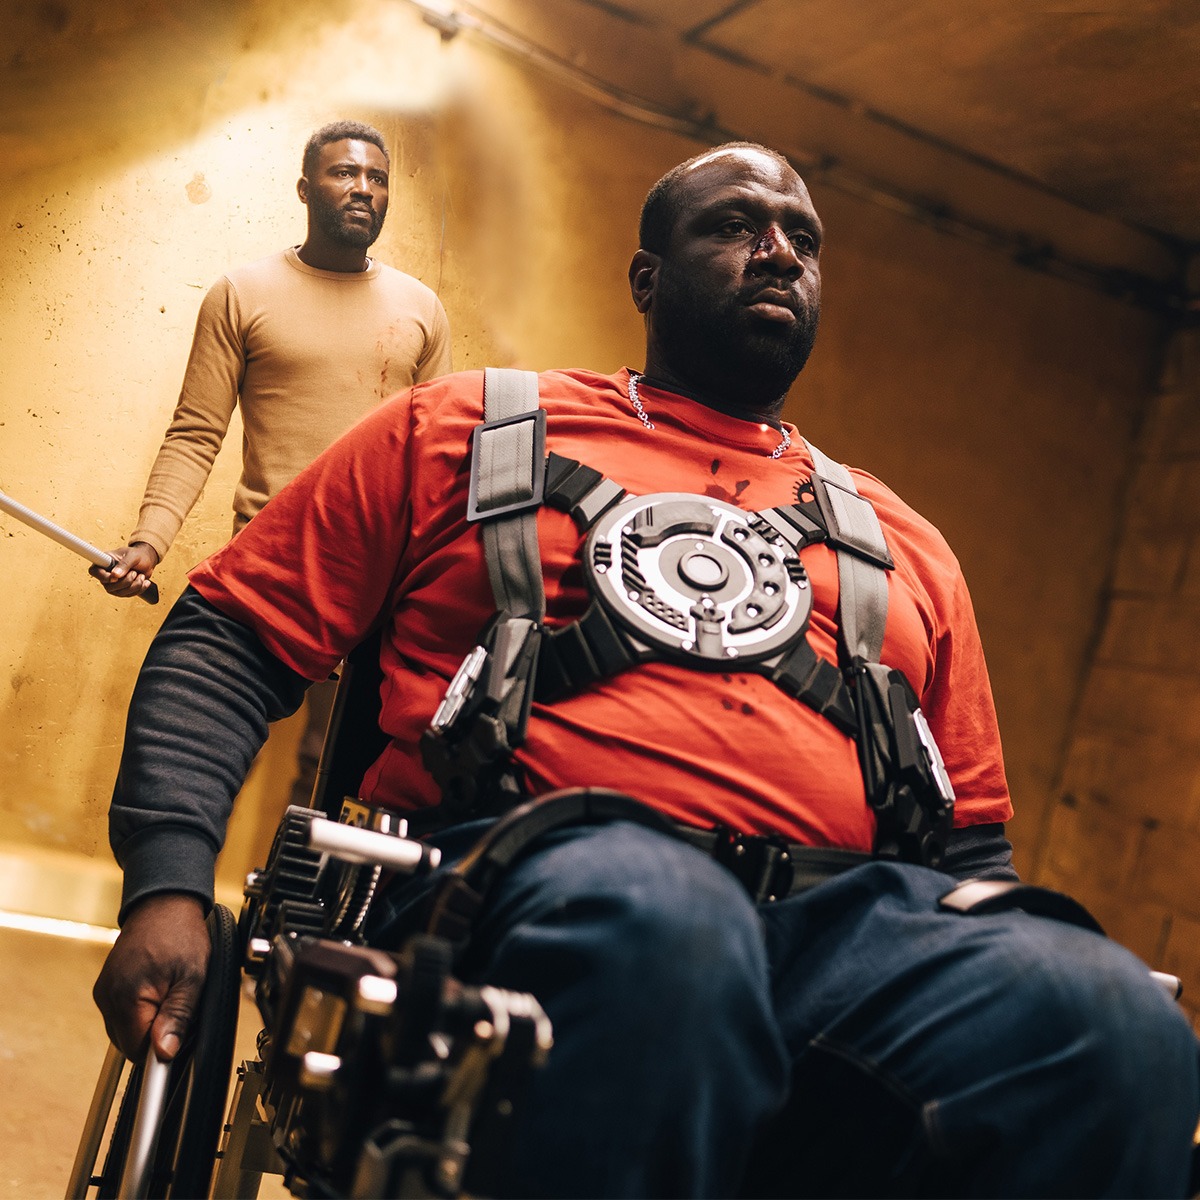 a man in a wheelchair followed by a man holding a club.